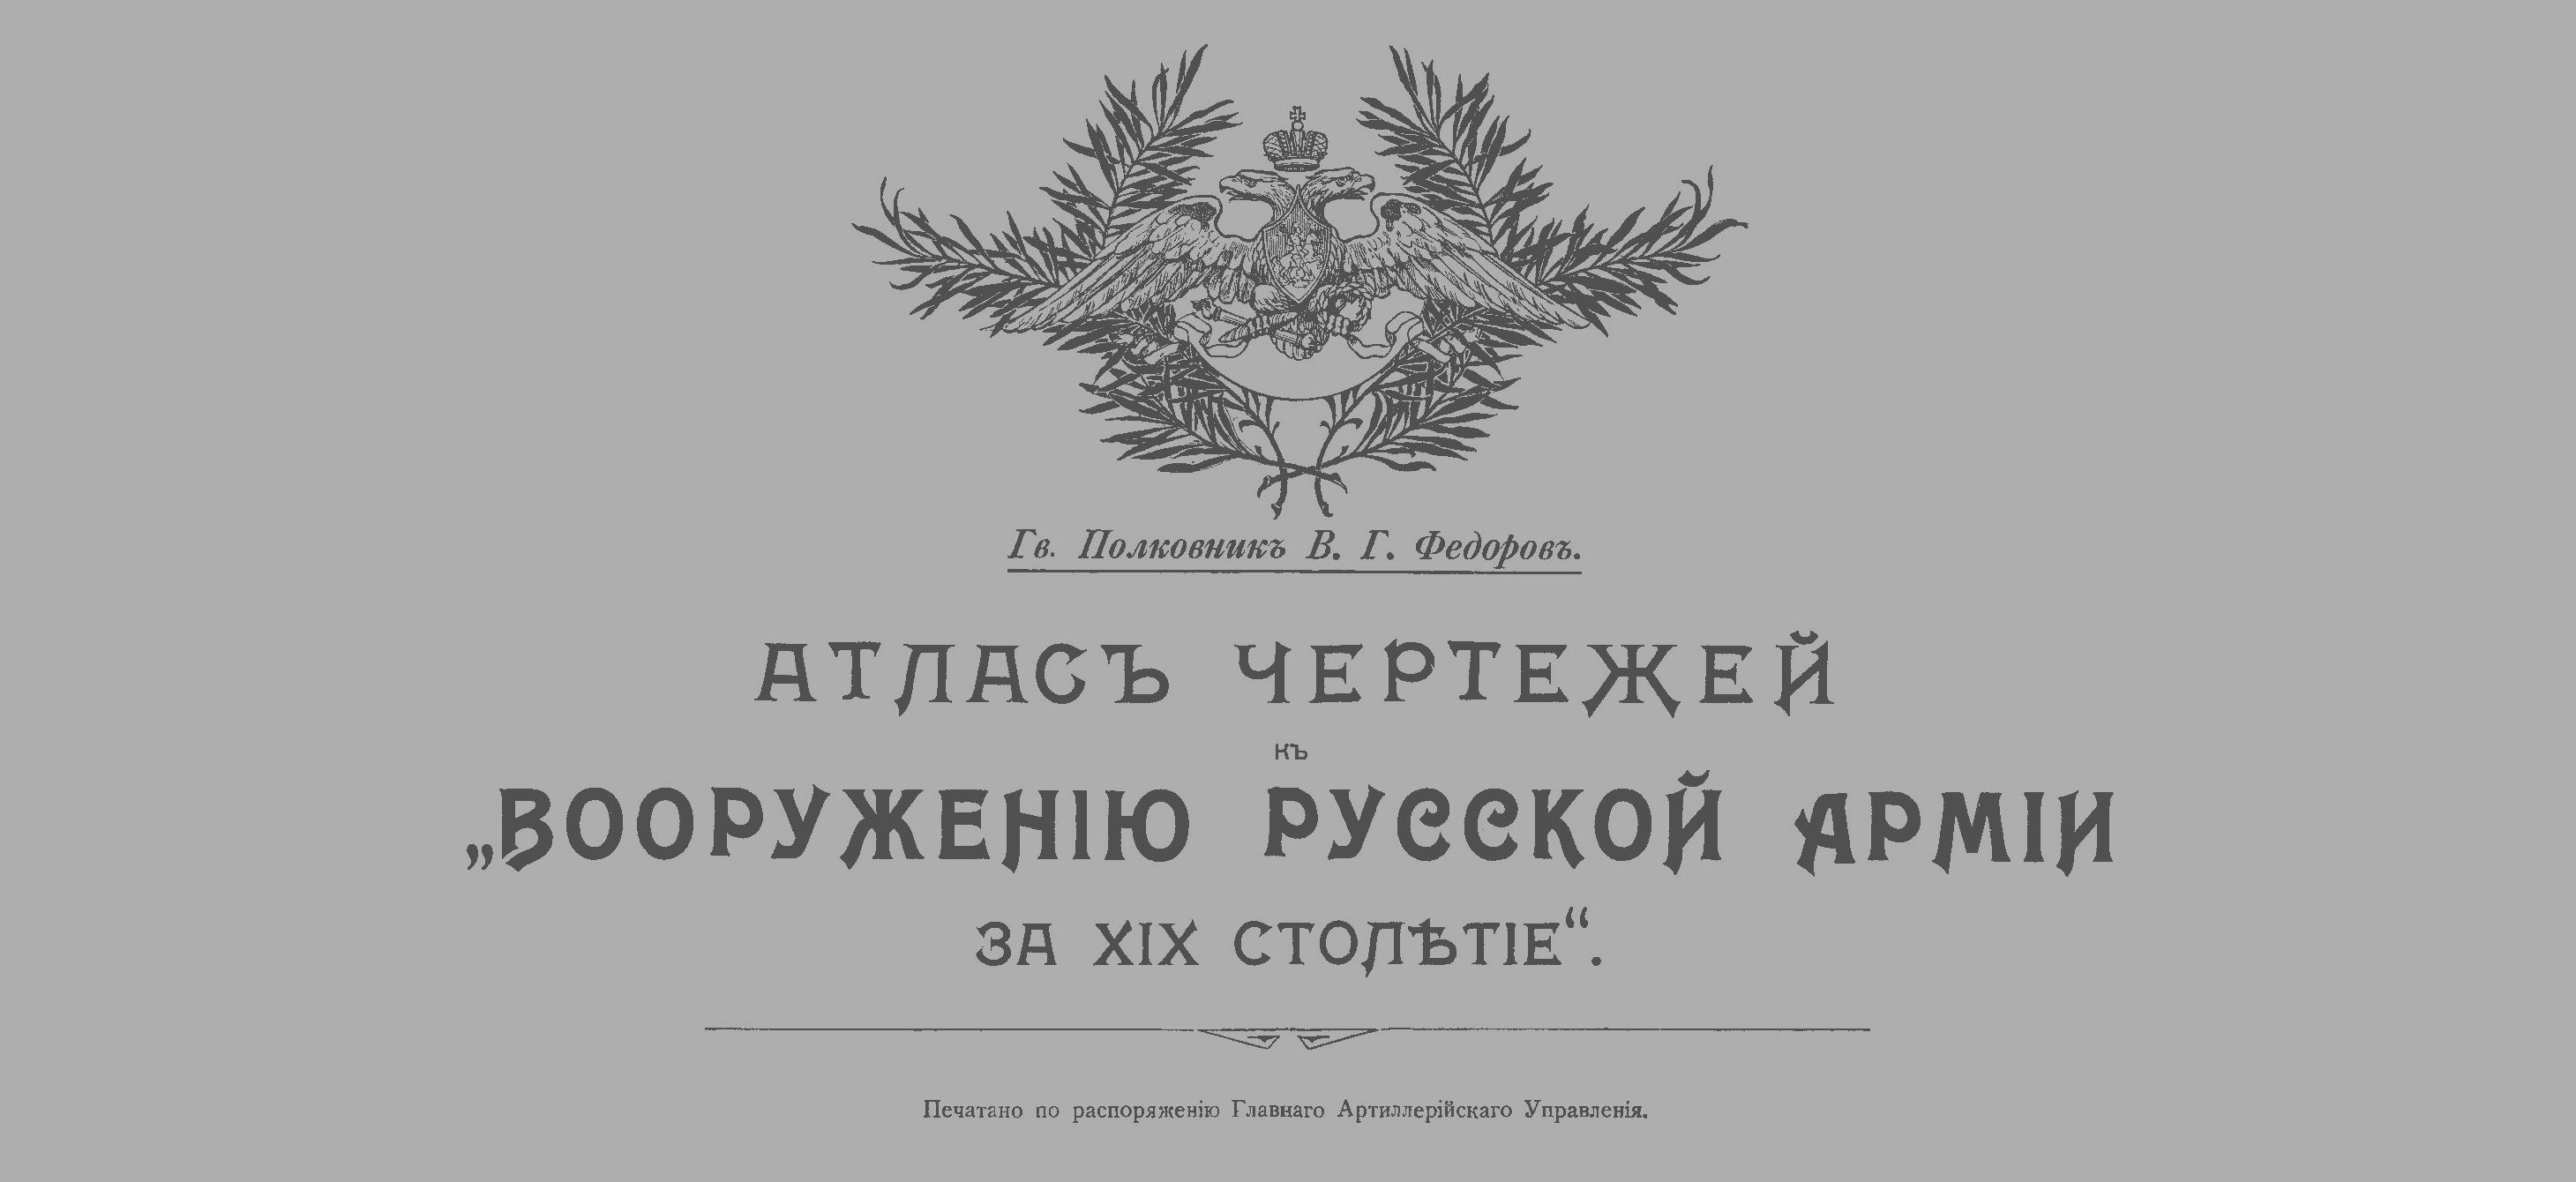 ESERCITO RUSSIA -Tavole Armi Russe XIX secolo 1900 (russo) - <b>DOWNLOAD</b>